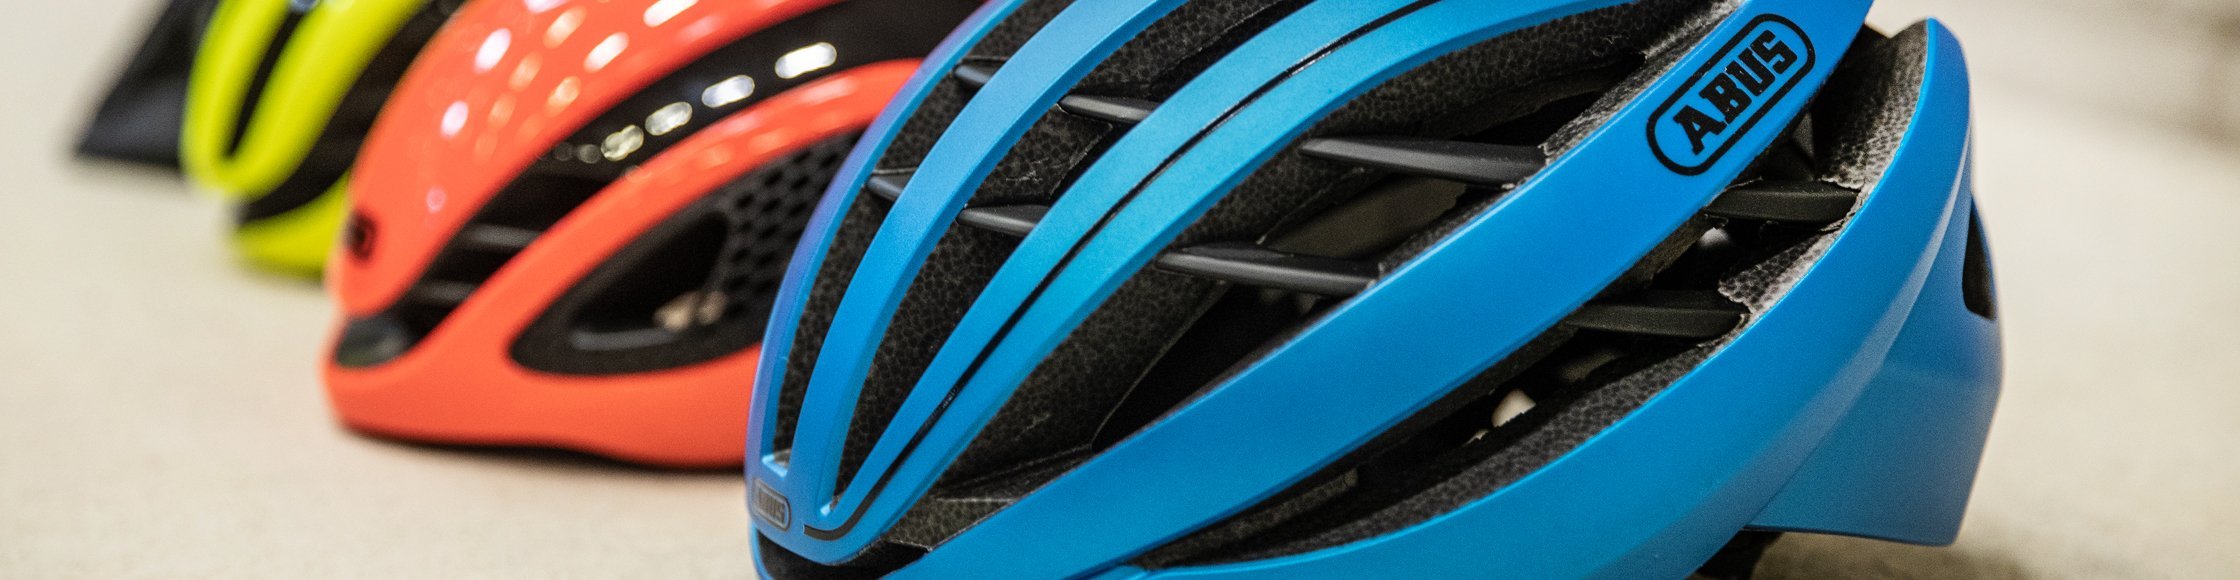 ABUS Fahrradhelme in unterschiedlichen Farben in einer Reihe hintereinander.